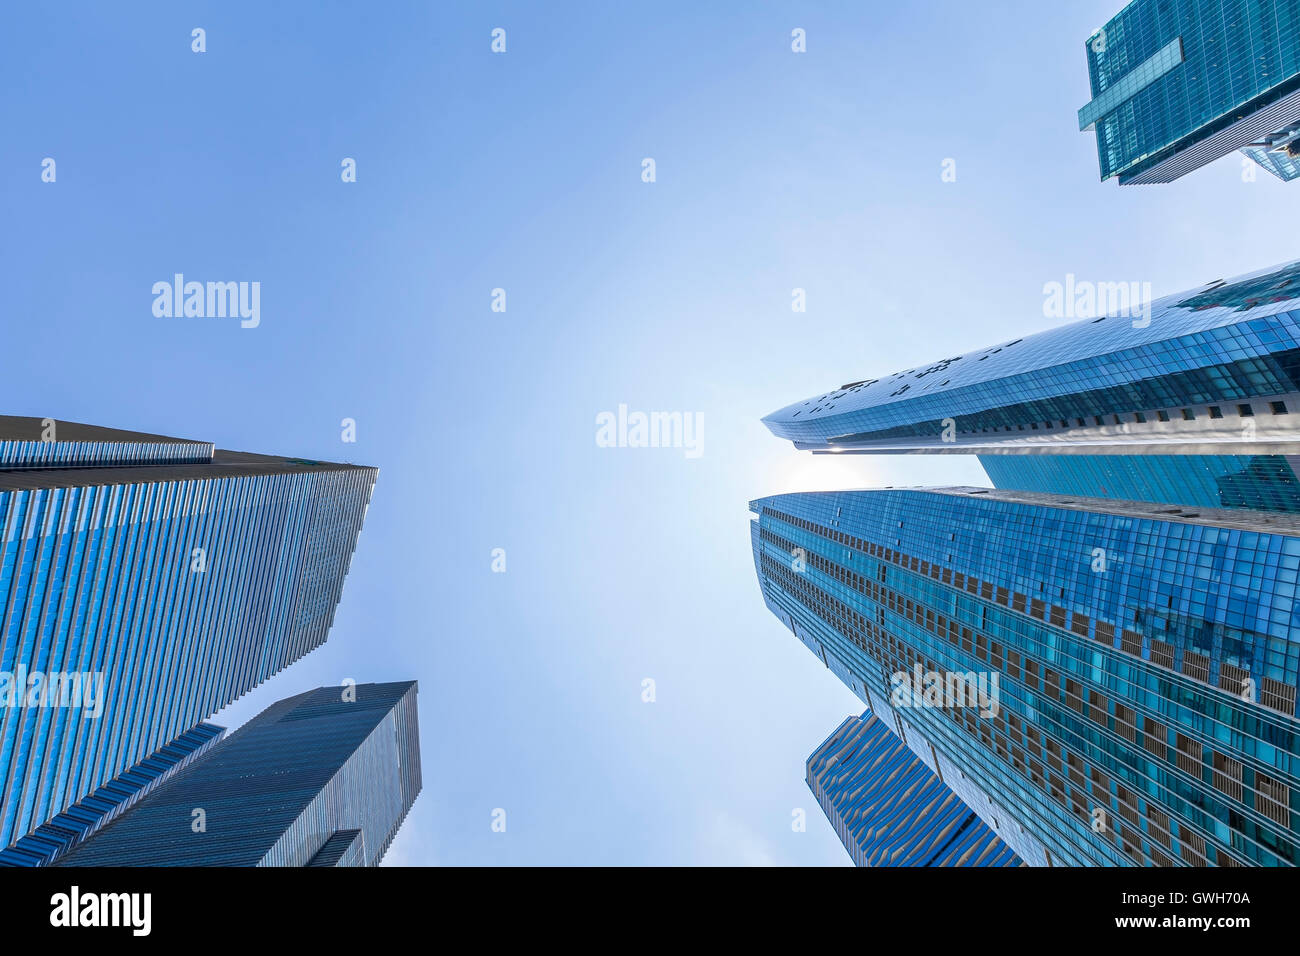 Résumé de la gratte-ciel avec ciel bleu dans le centre-ville de Singapour. Siège de l'entreprise et des finances. Reflétant le soleil Banque D'Images